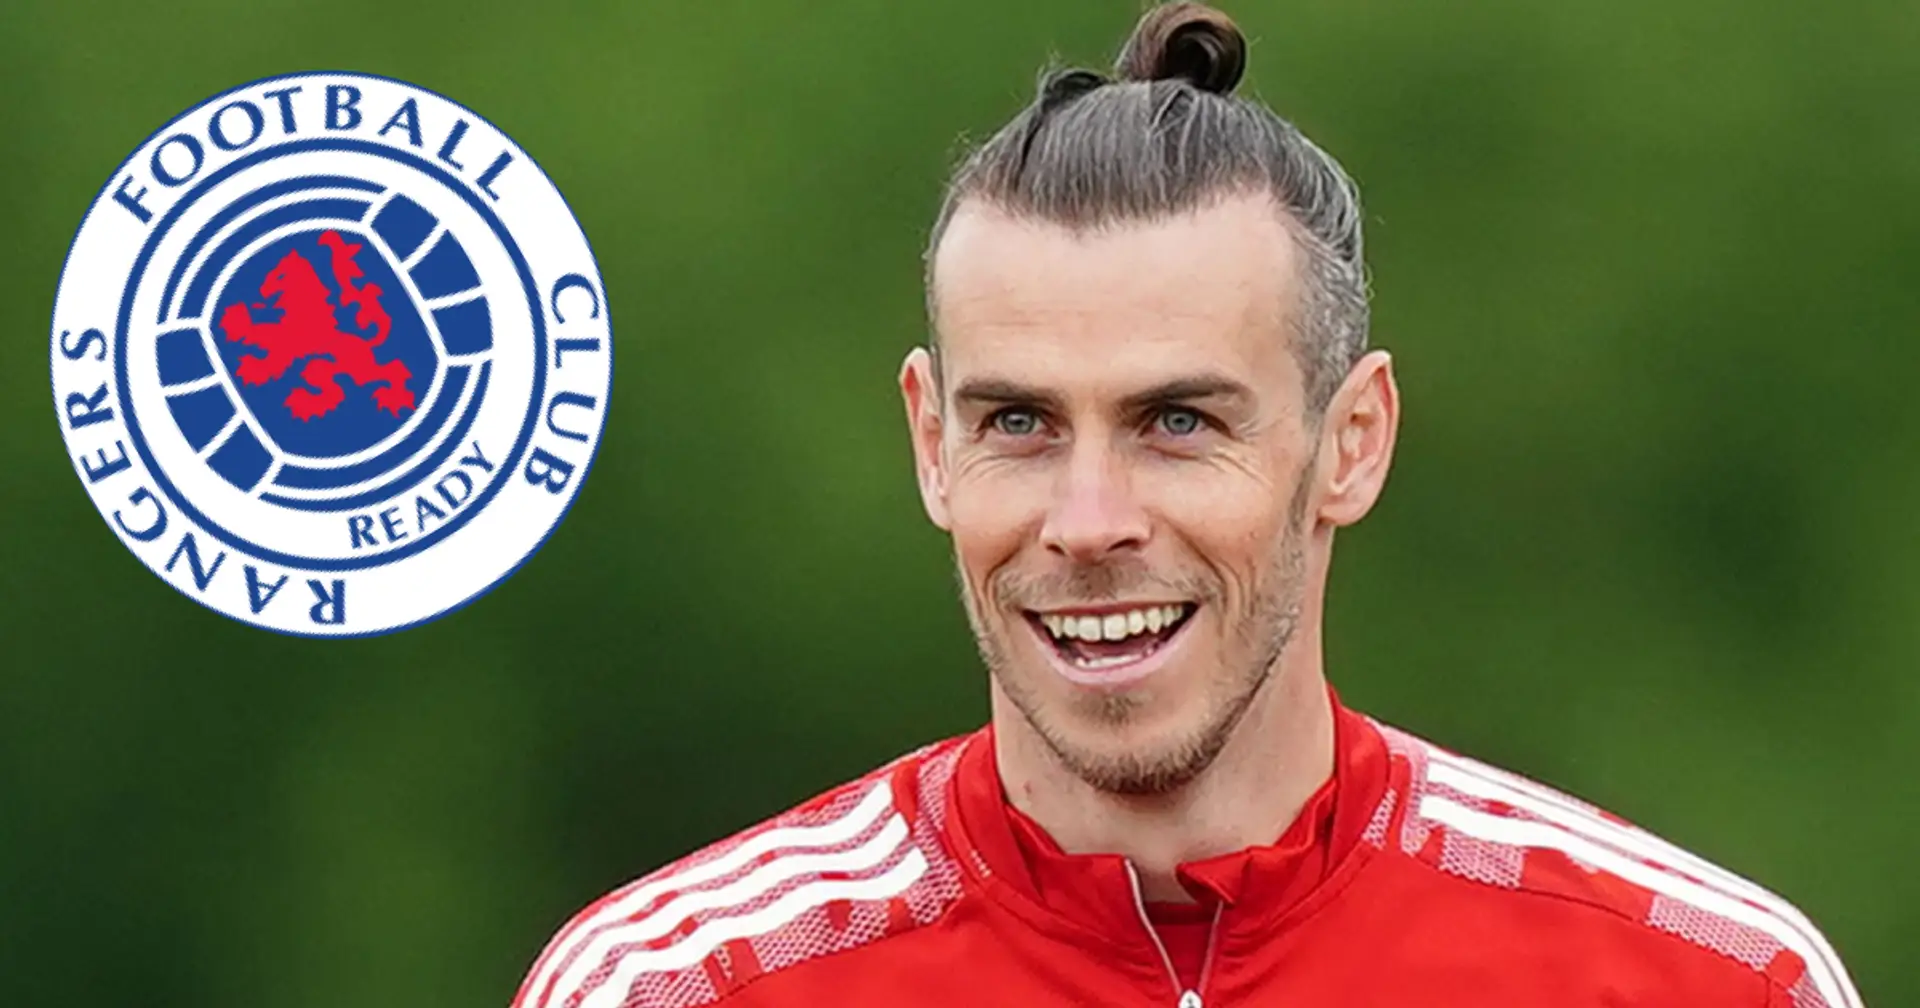 Gareth invité à rejoindre un club écossais pour une raison hilarante